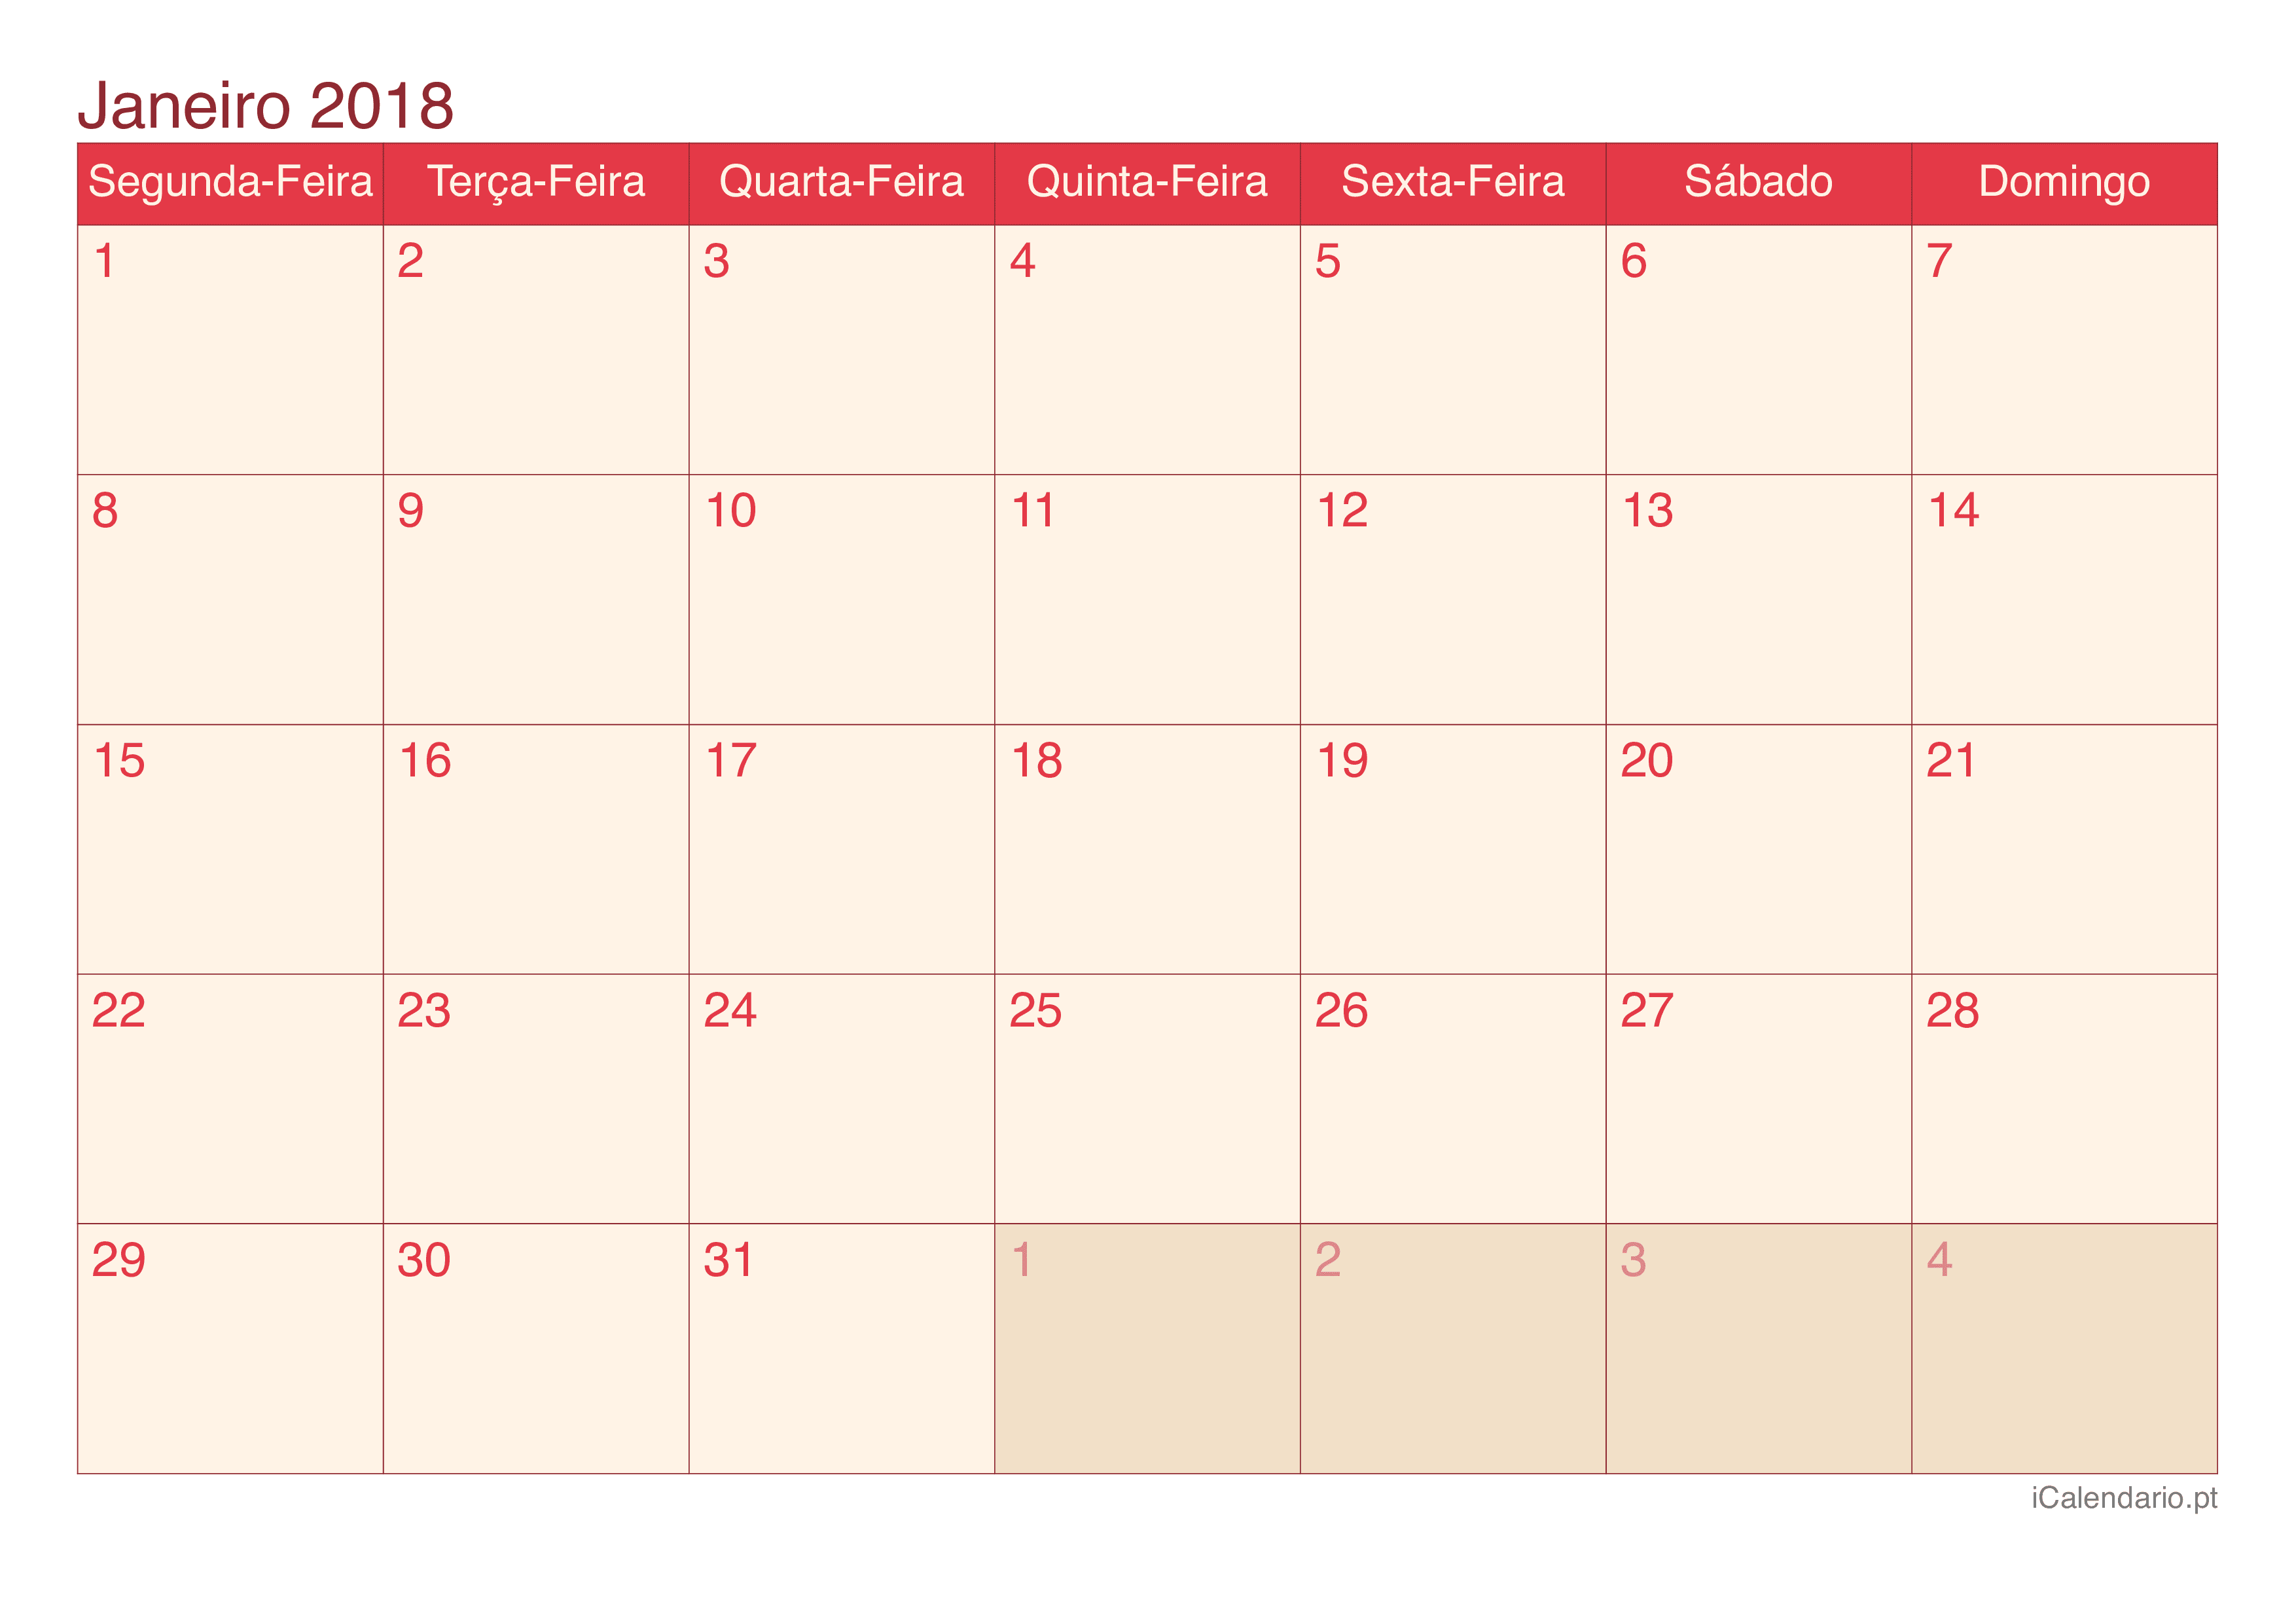 Calendário de janeiro 2018 - Cherry